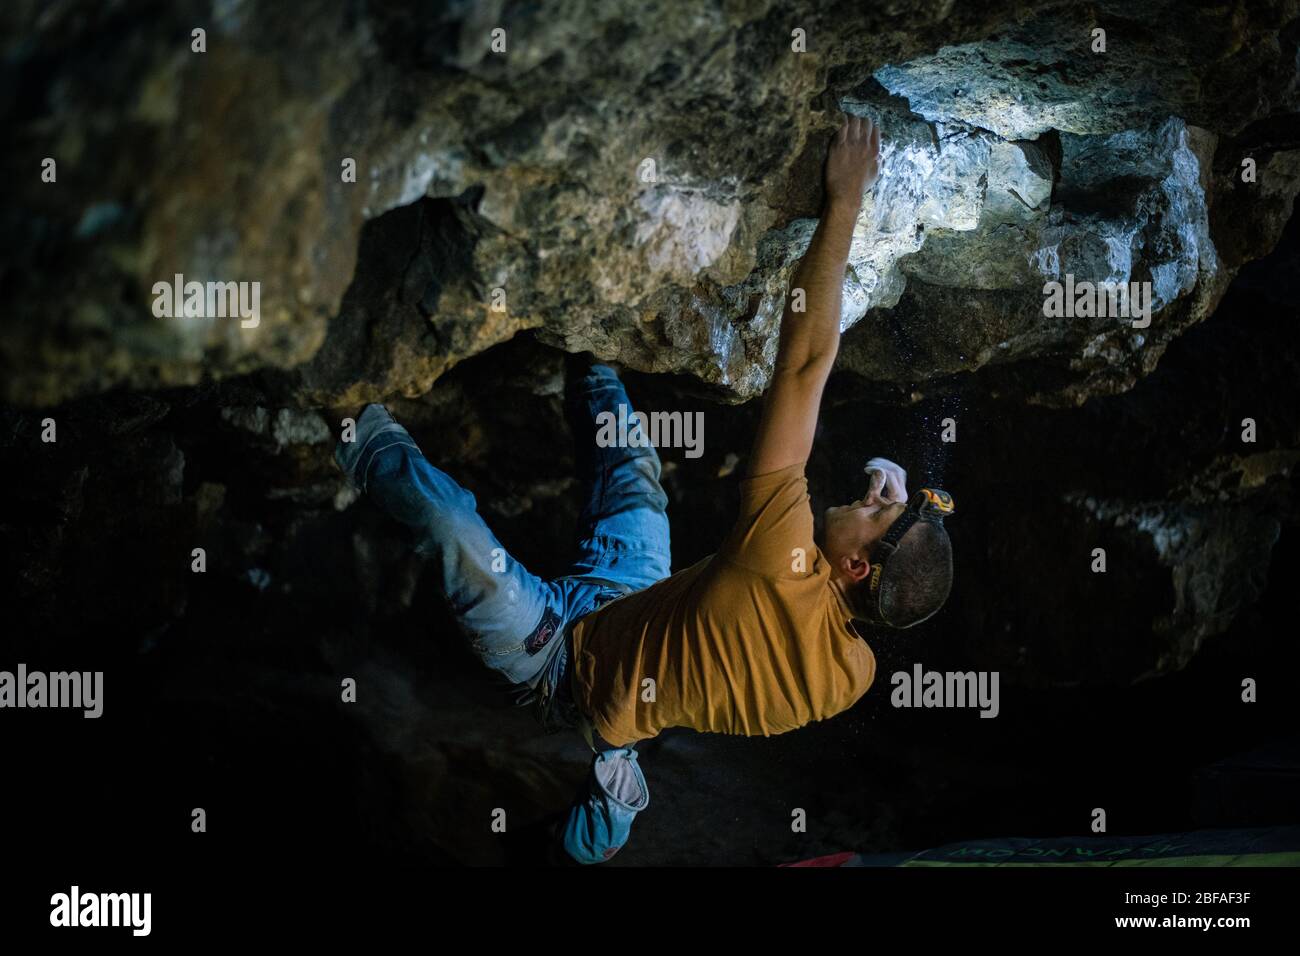 KRAKÓW, POLONIA – 02,02,2020: L'uomo sta facendo un masso nella grotta di Twardowski. Bouldering nella roccia. Grotta di Twardowski Foto Stock